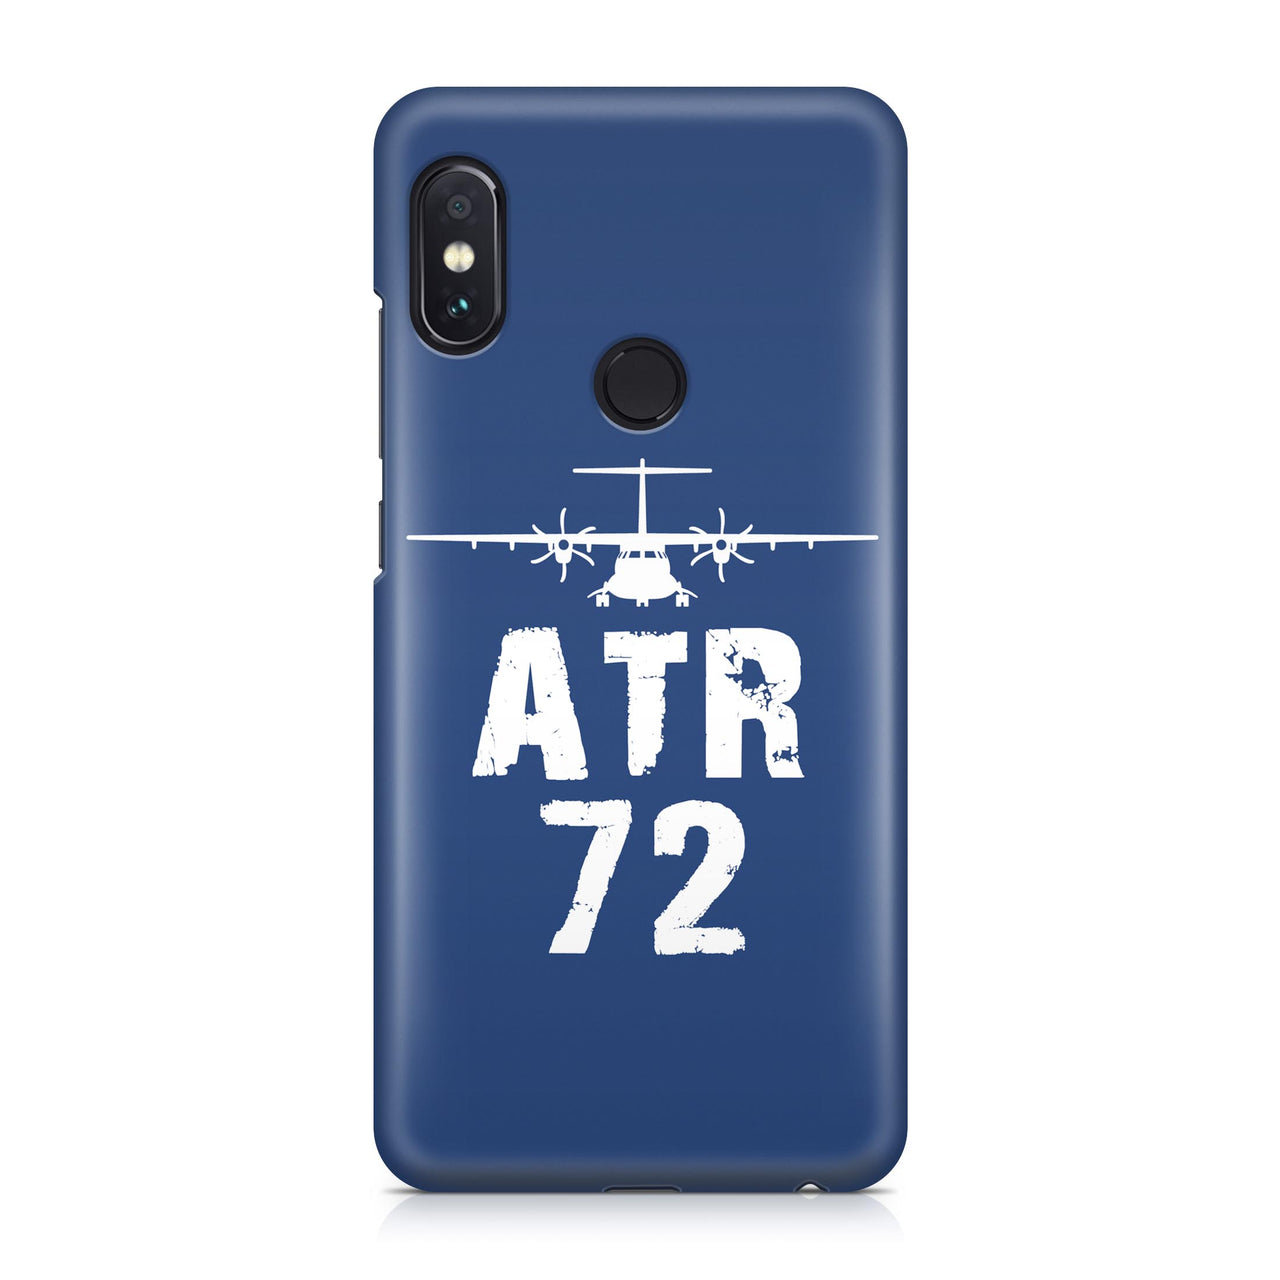 ATR-72 Plane & Designed Xiaomi Cases